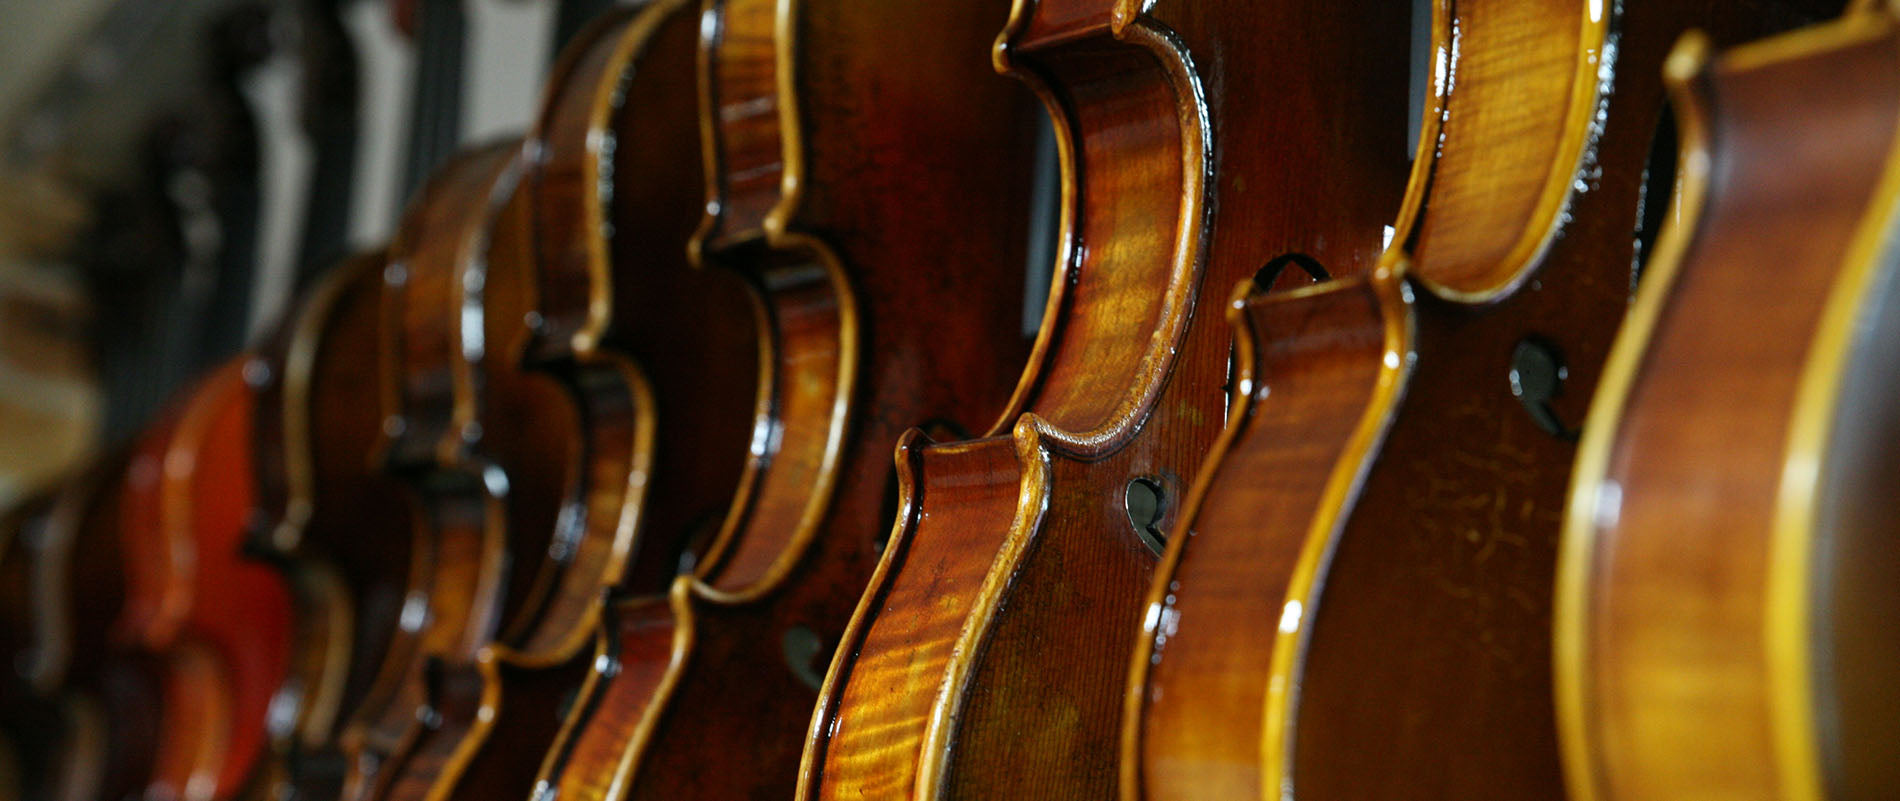 Atticus Fordi Regnbue Obligato Violin Strings | Violins and such